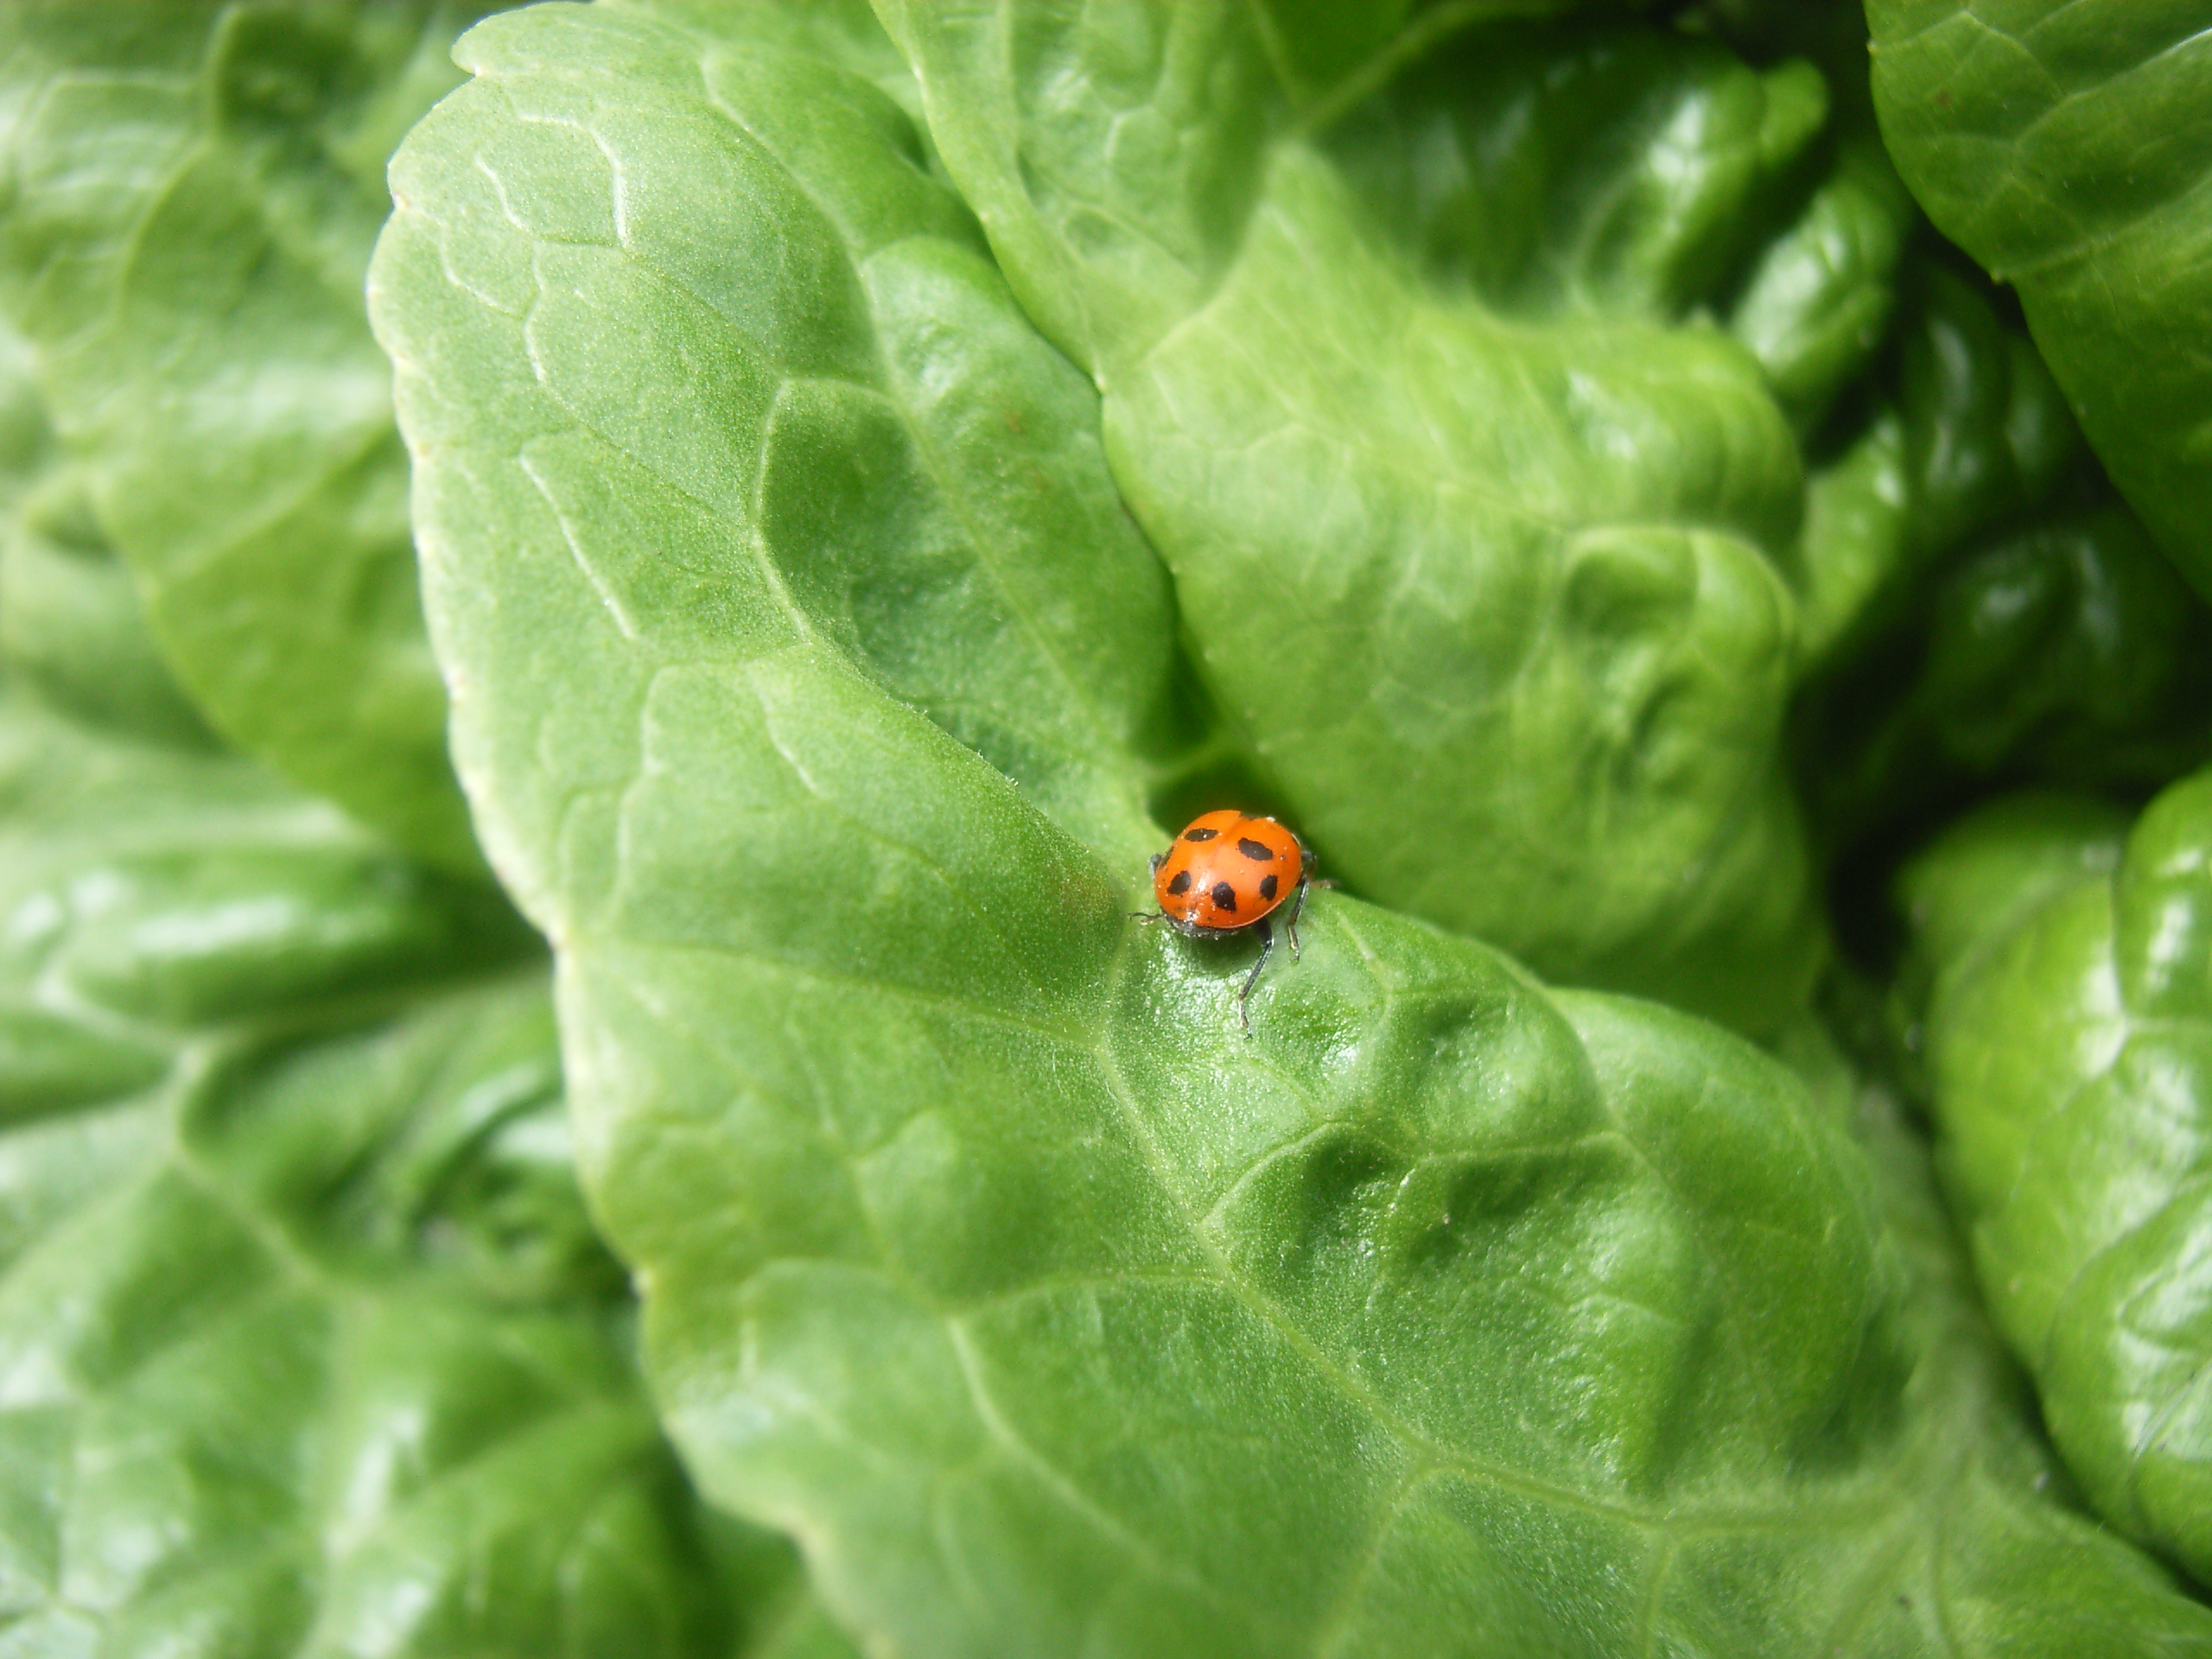 IPM example - Ladybug on lettuce